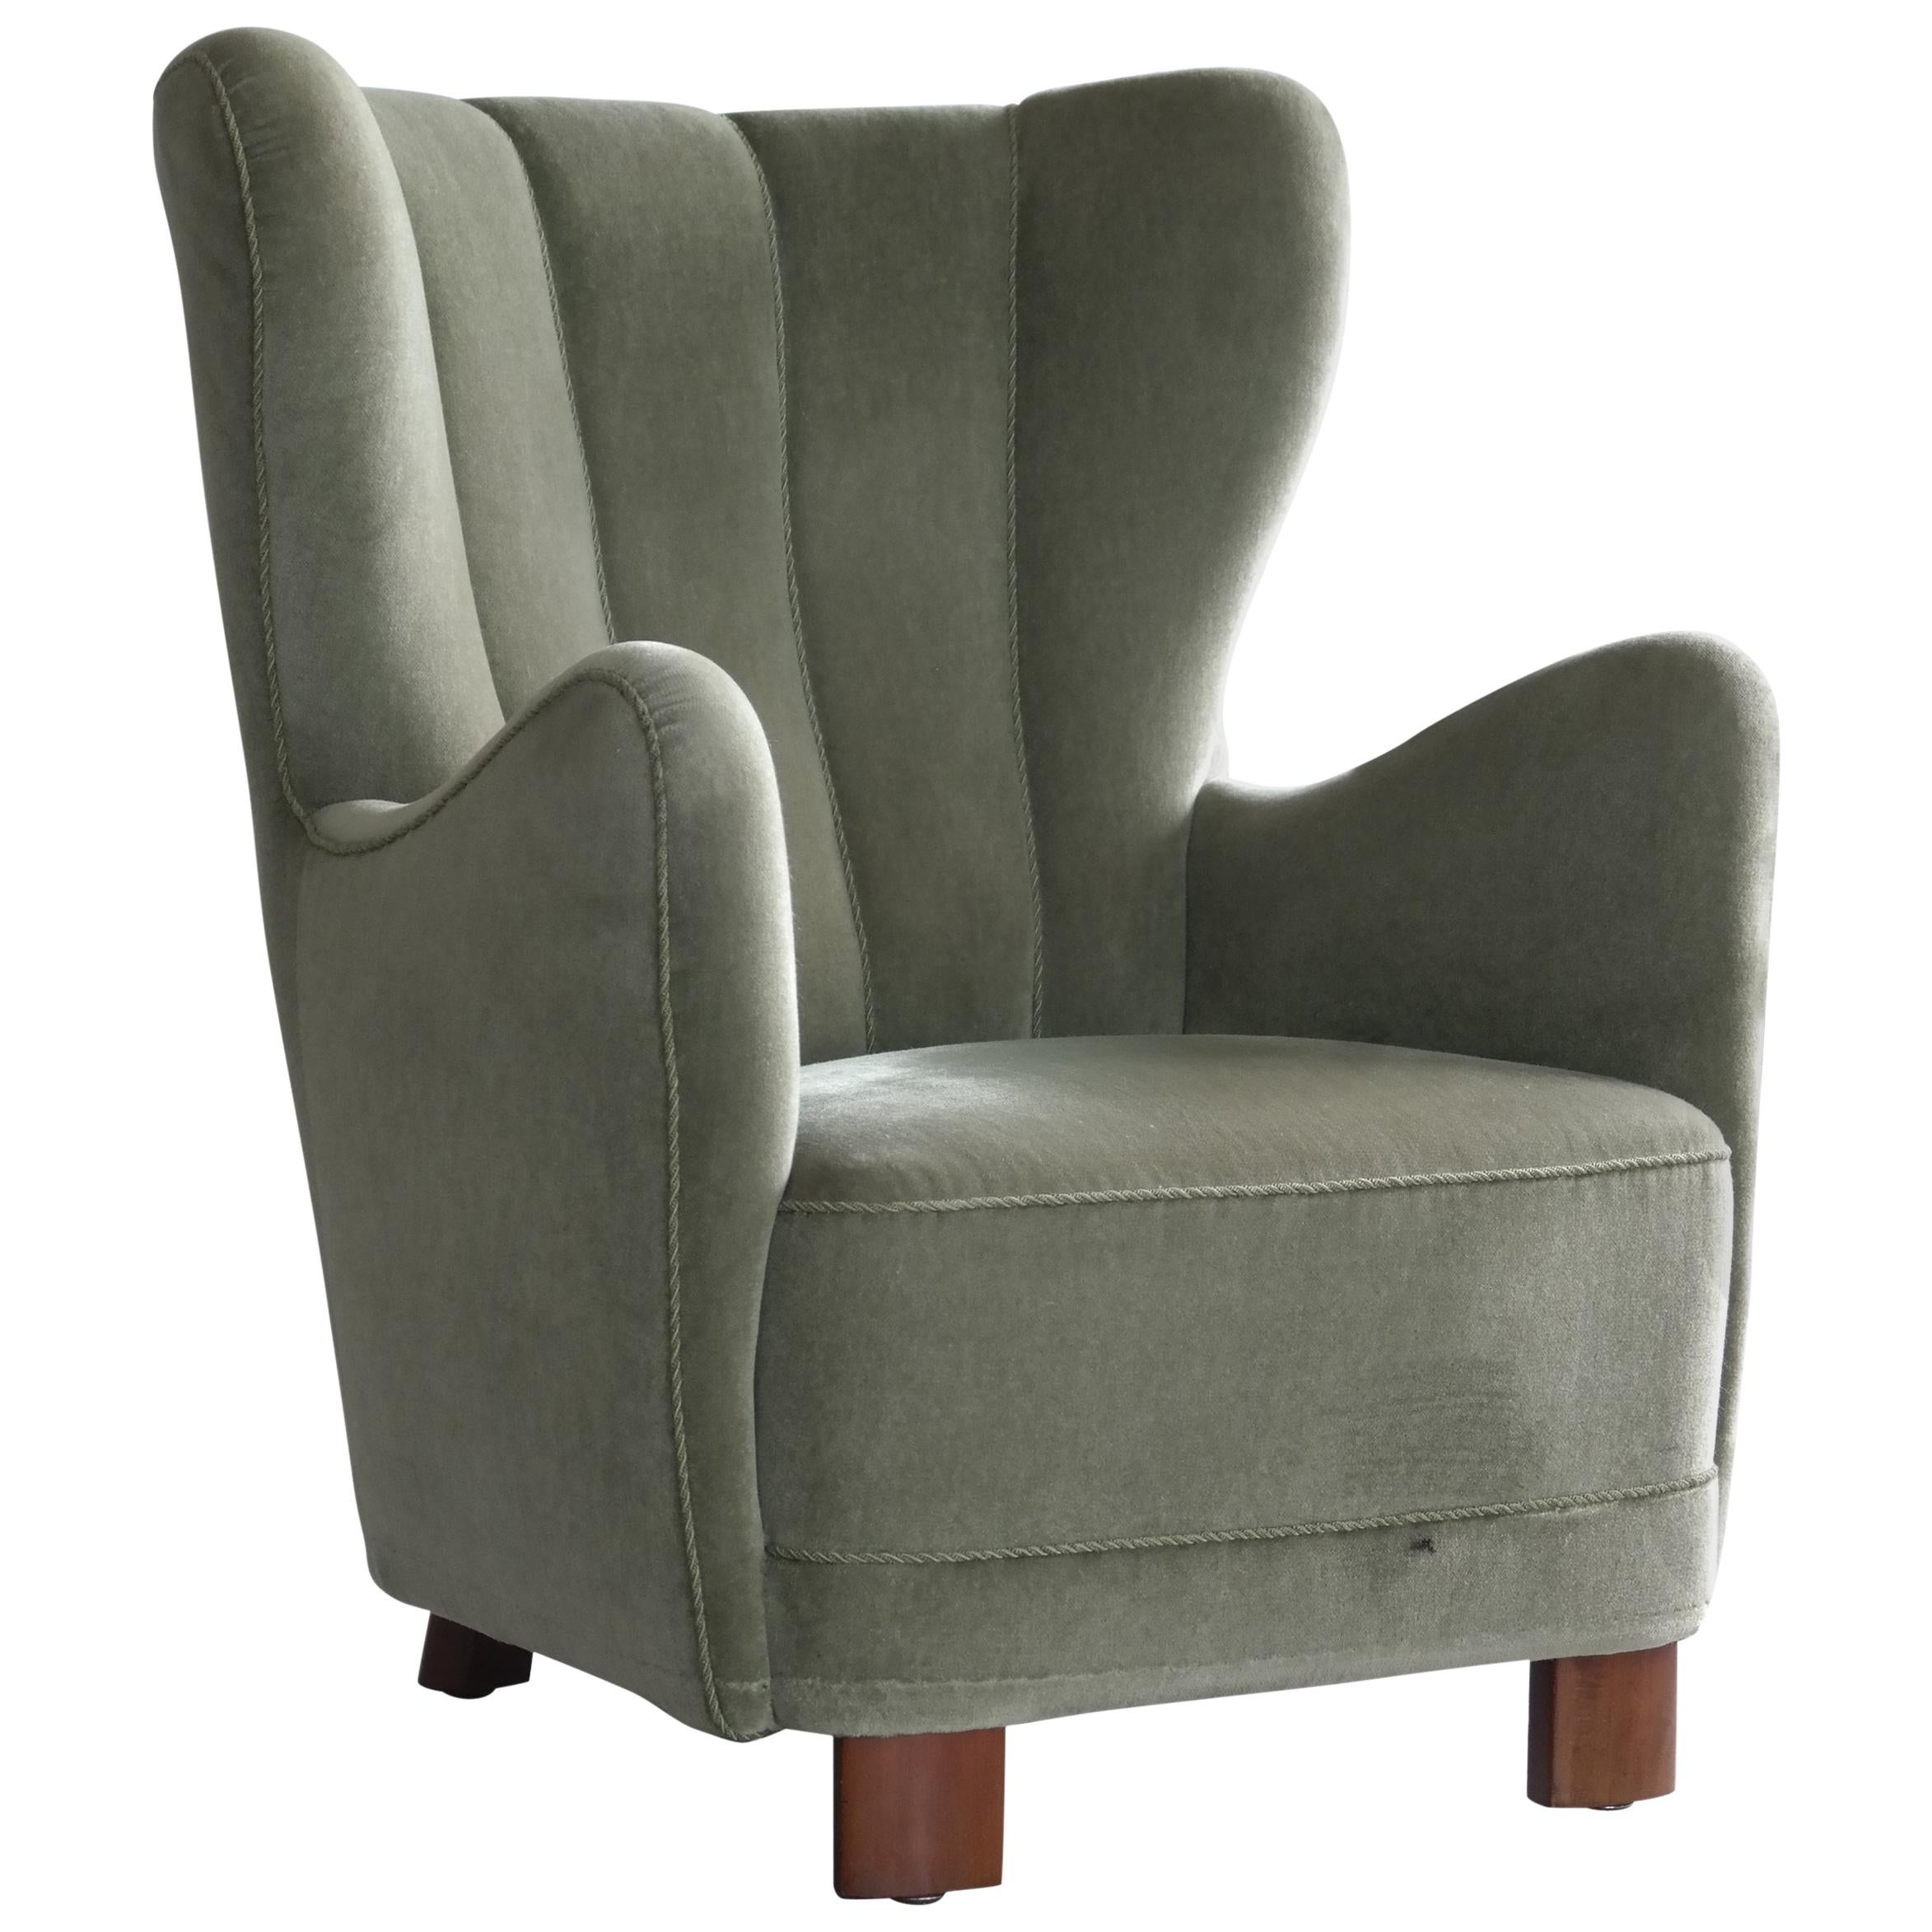 Danish Midcentury High Back Lounge Chair Denmark by Slagelse Mobelvaerk